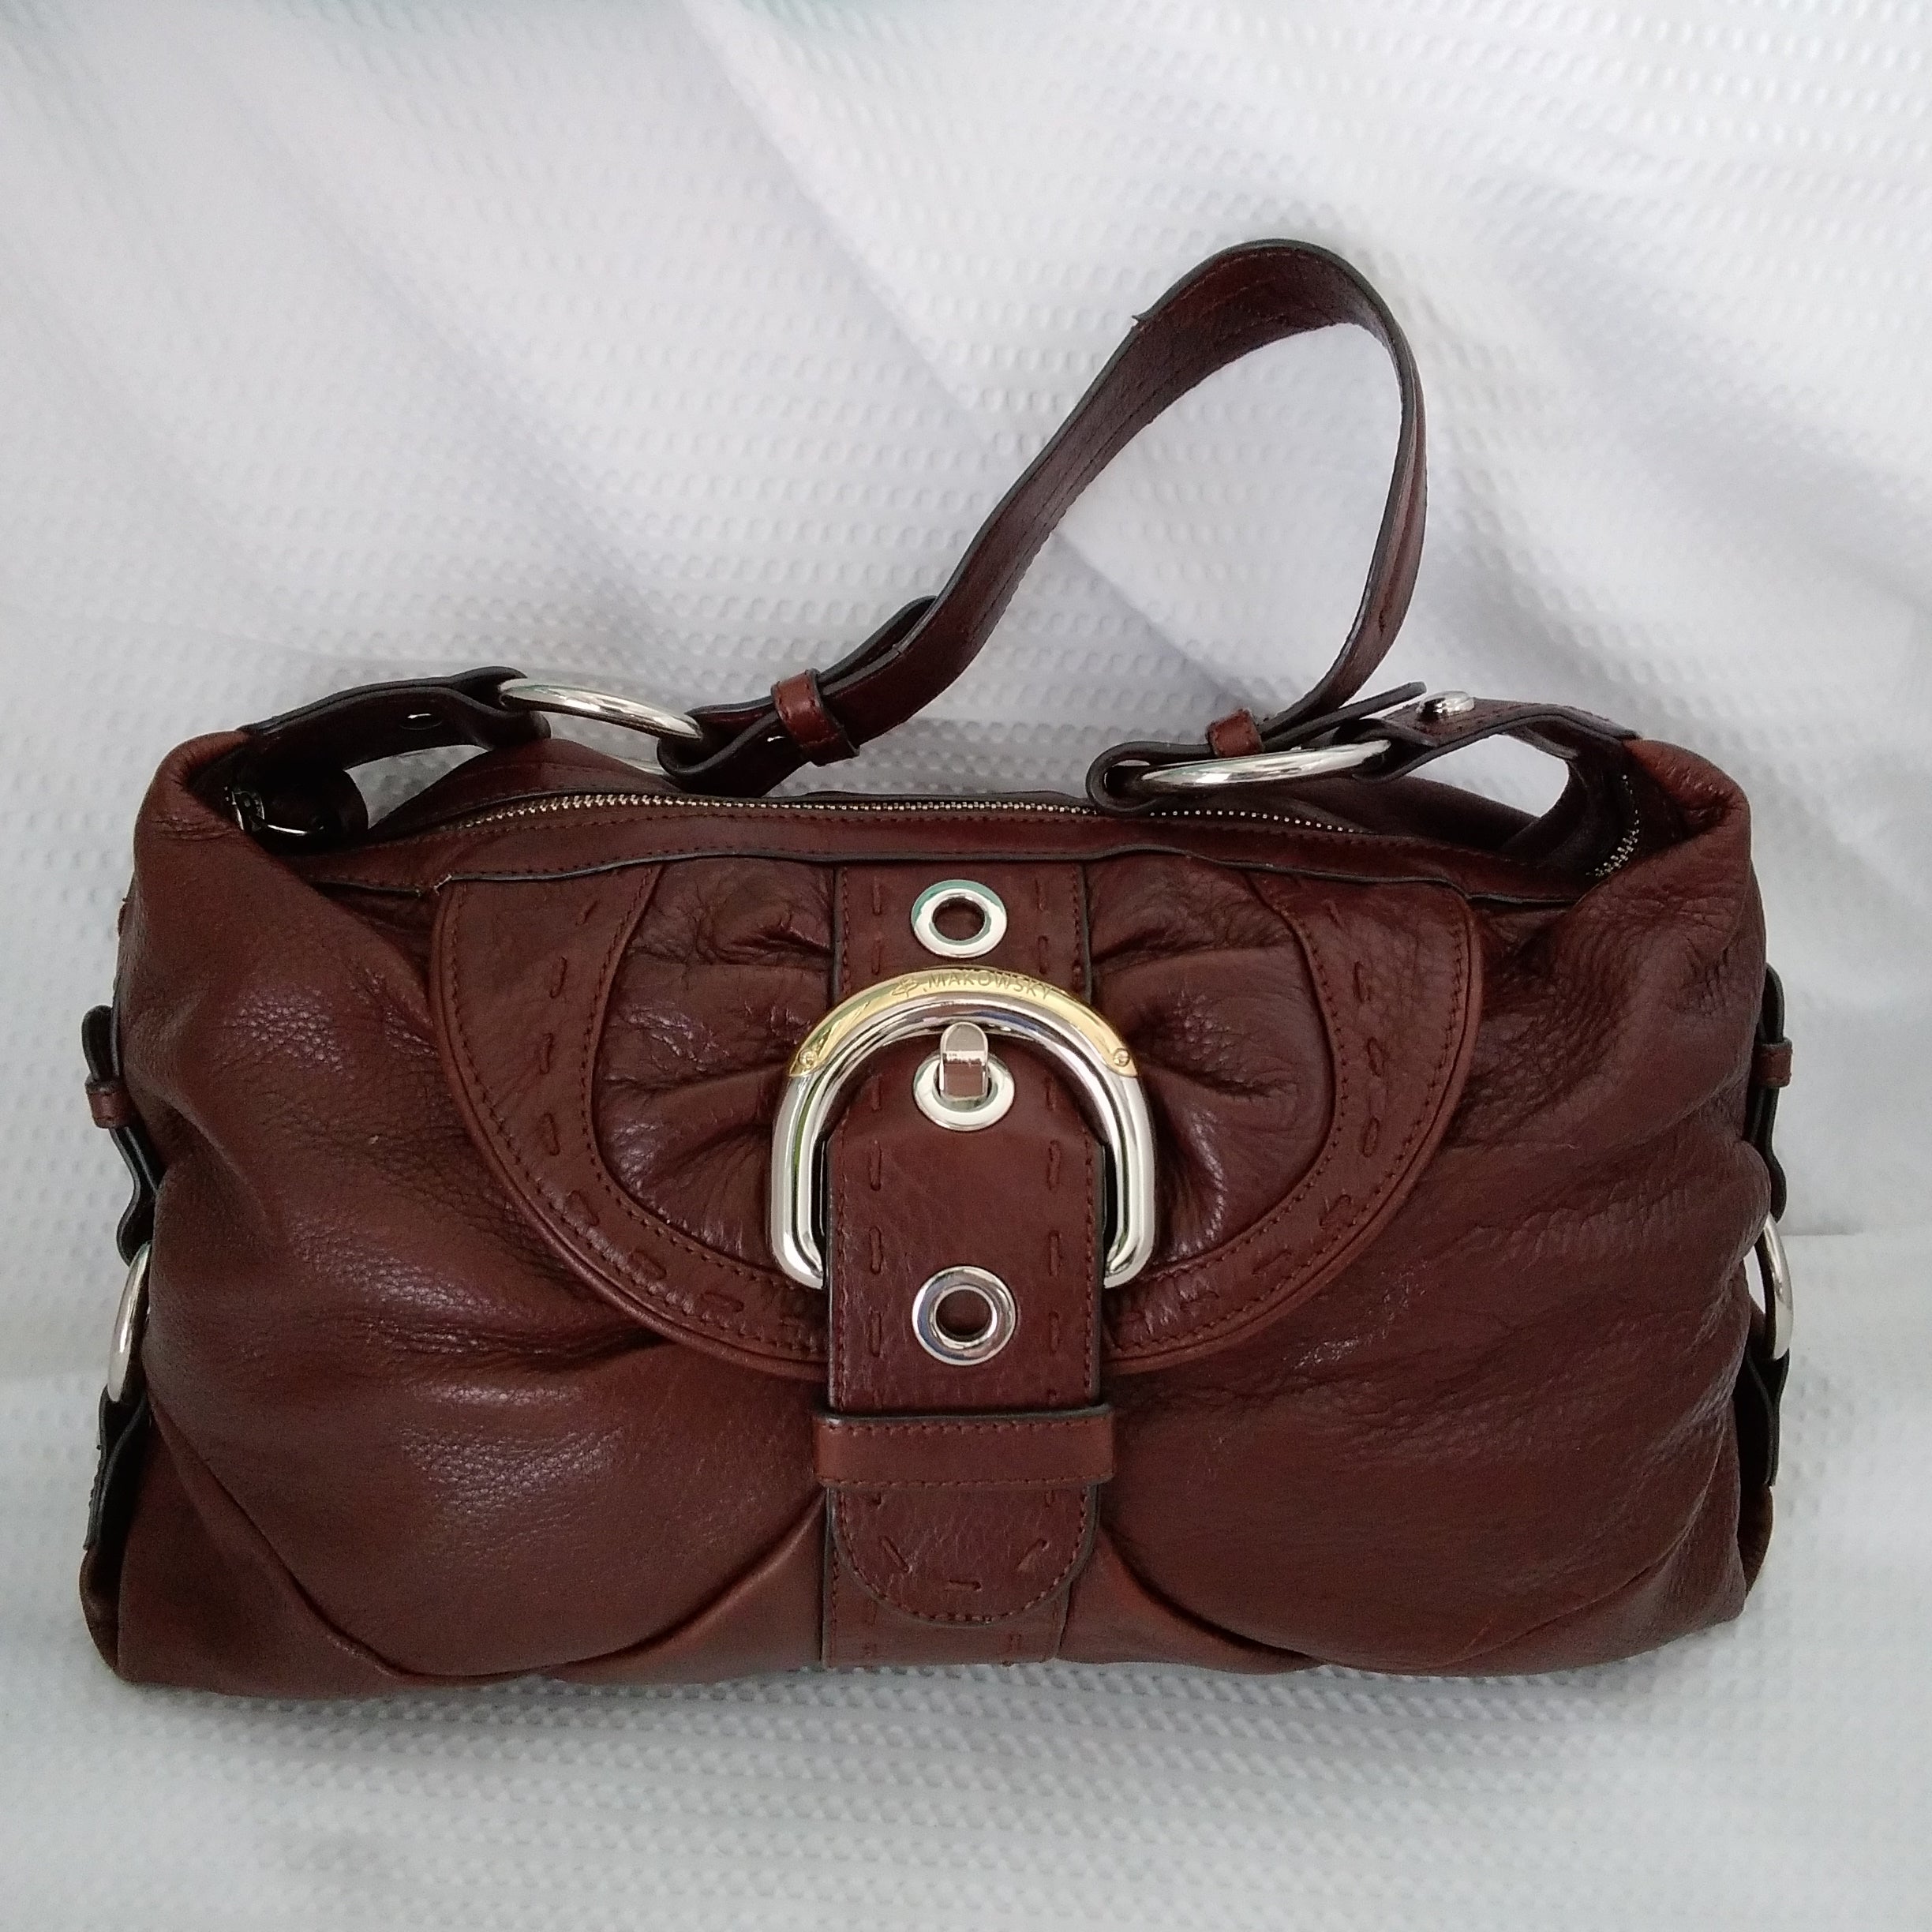 Handbag Designer By B Makowsky Size: Medium